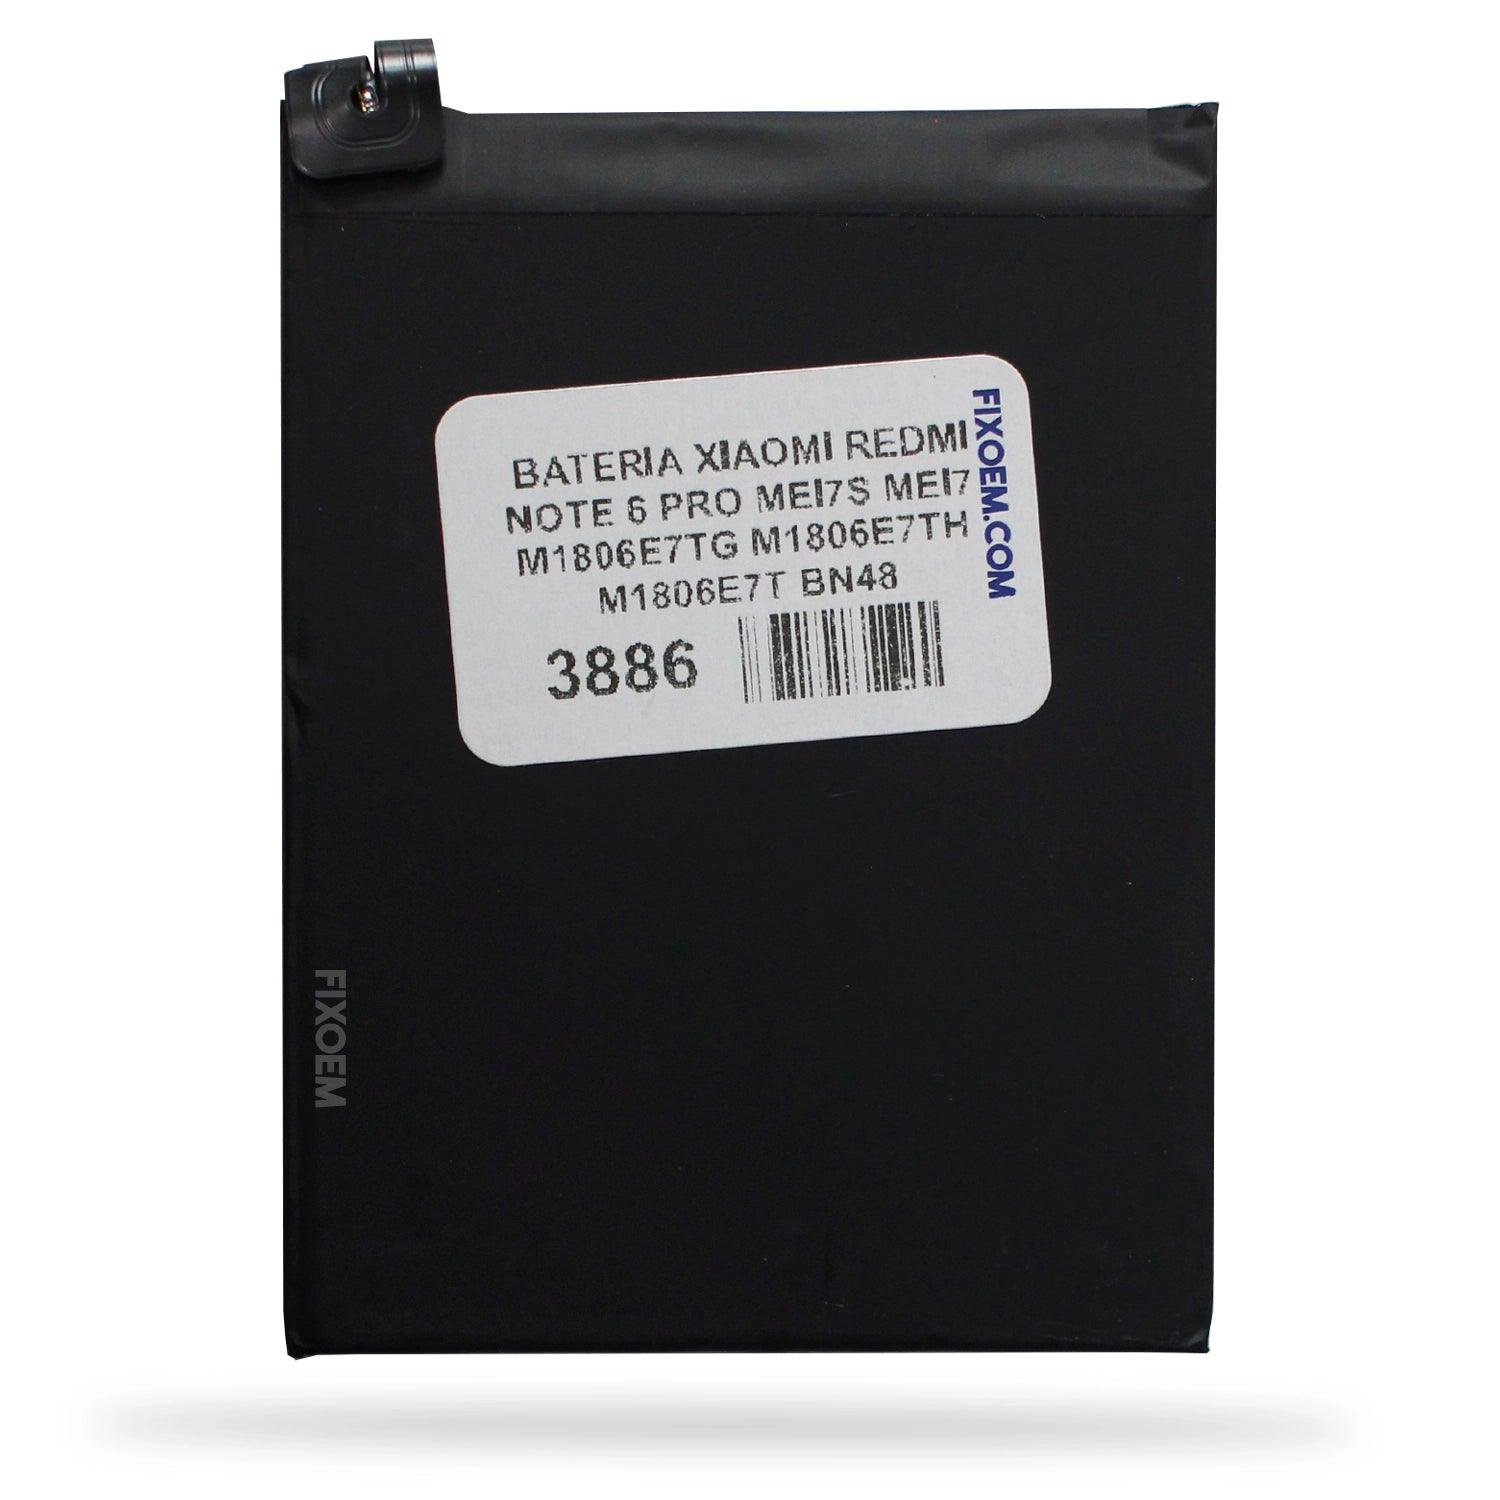 Bateria Xiaomi Redmi Note 6 Pro Mei7s Mei7 M1806e7tg M1806e7th M1806e7t Bn48 a solo $ 120.00 Refaccion y puestos celulares, refurbish y microelectronica.- FixOEM